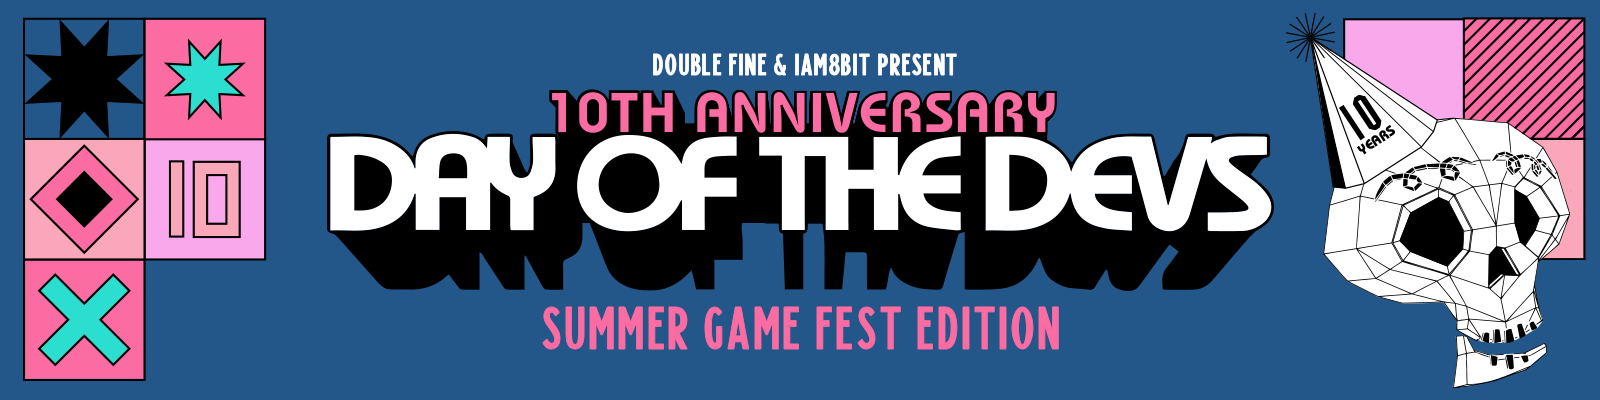 Summer Game Fest 2022 Live